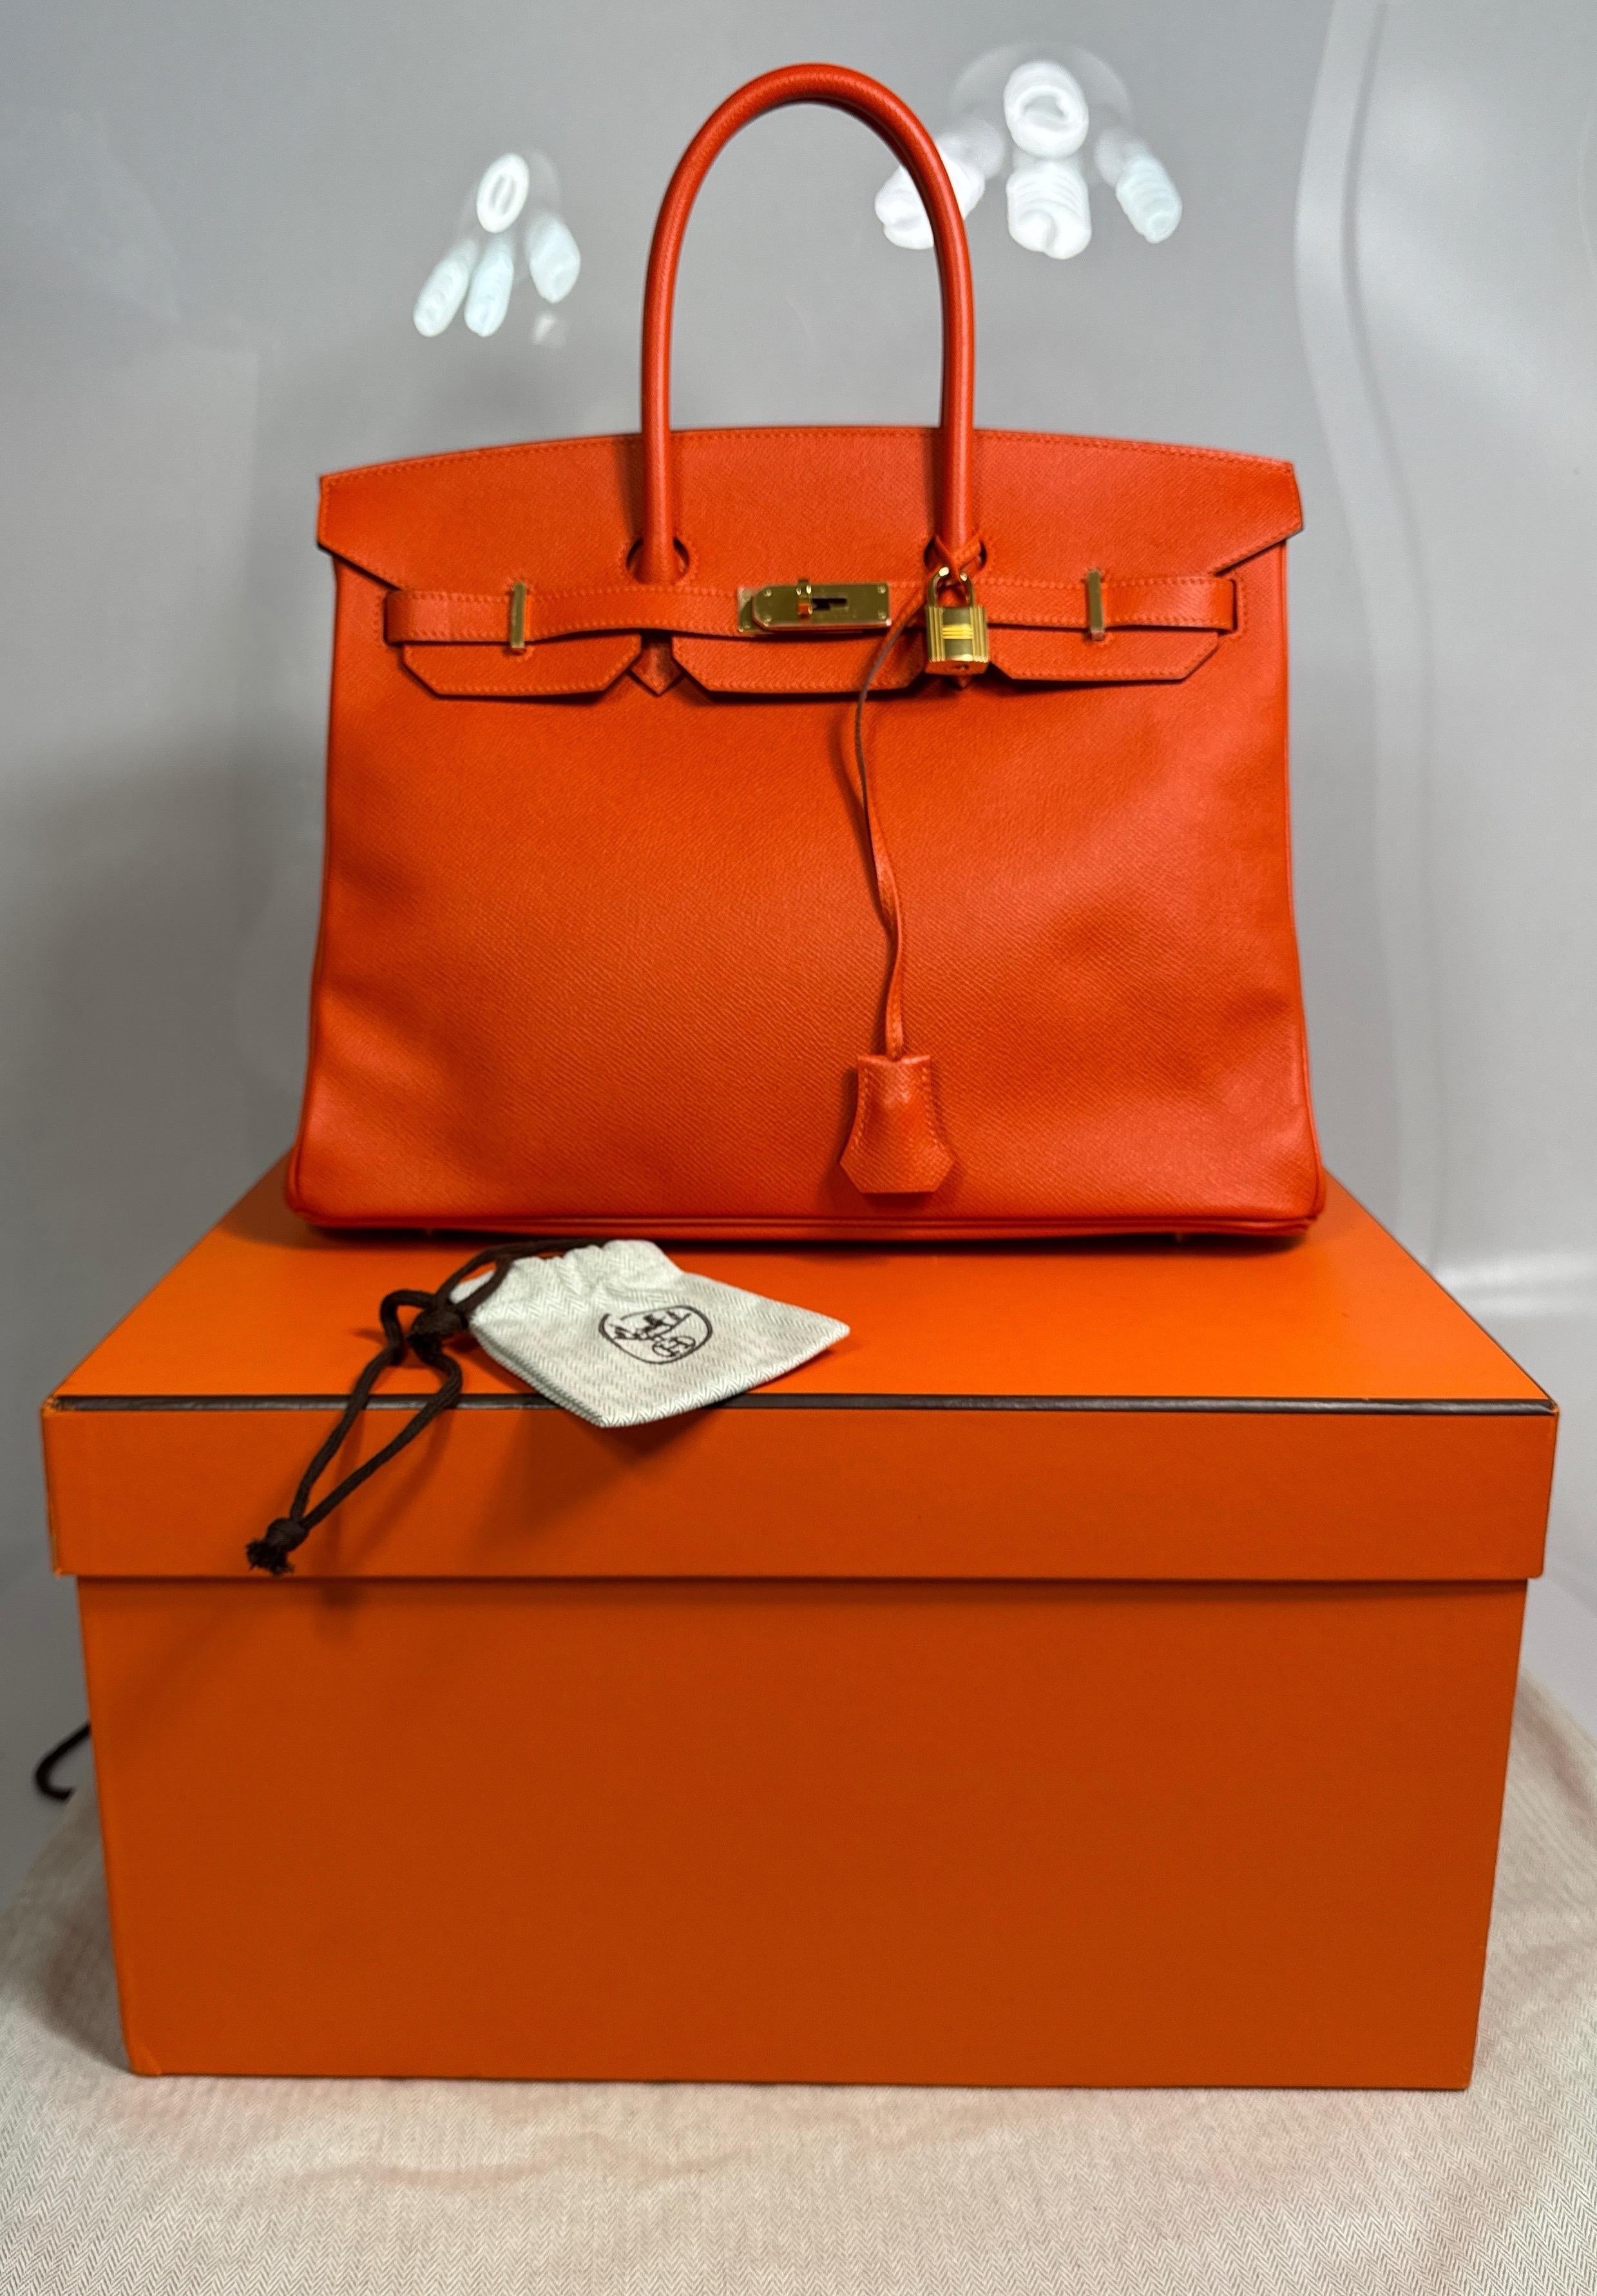 Hermes Orange Togo 35cm Birkin - 2016 - GHW - NEW NEVER CARRIED For Sale 8